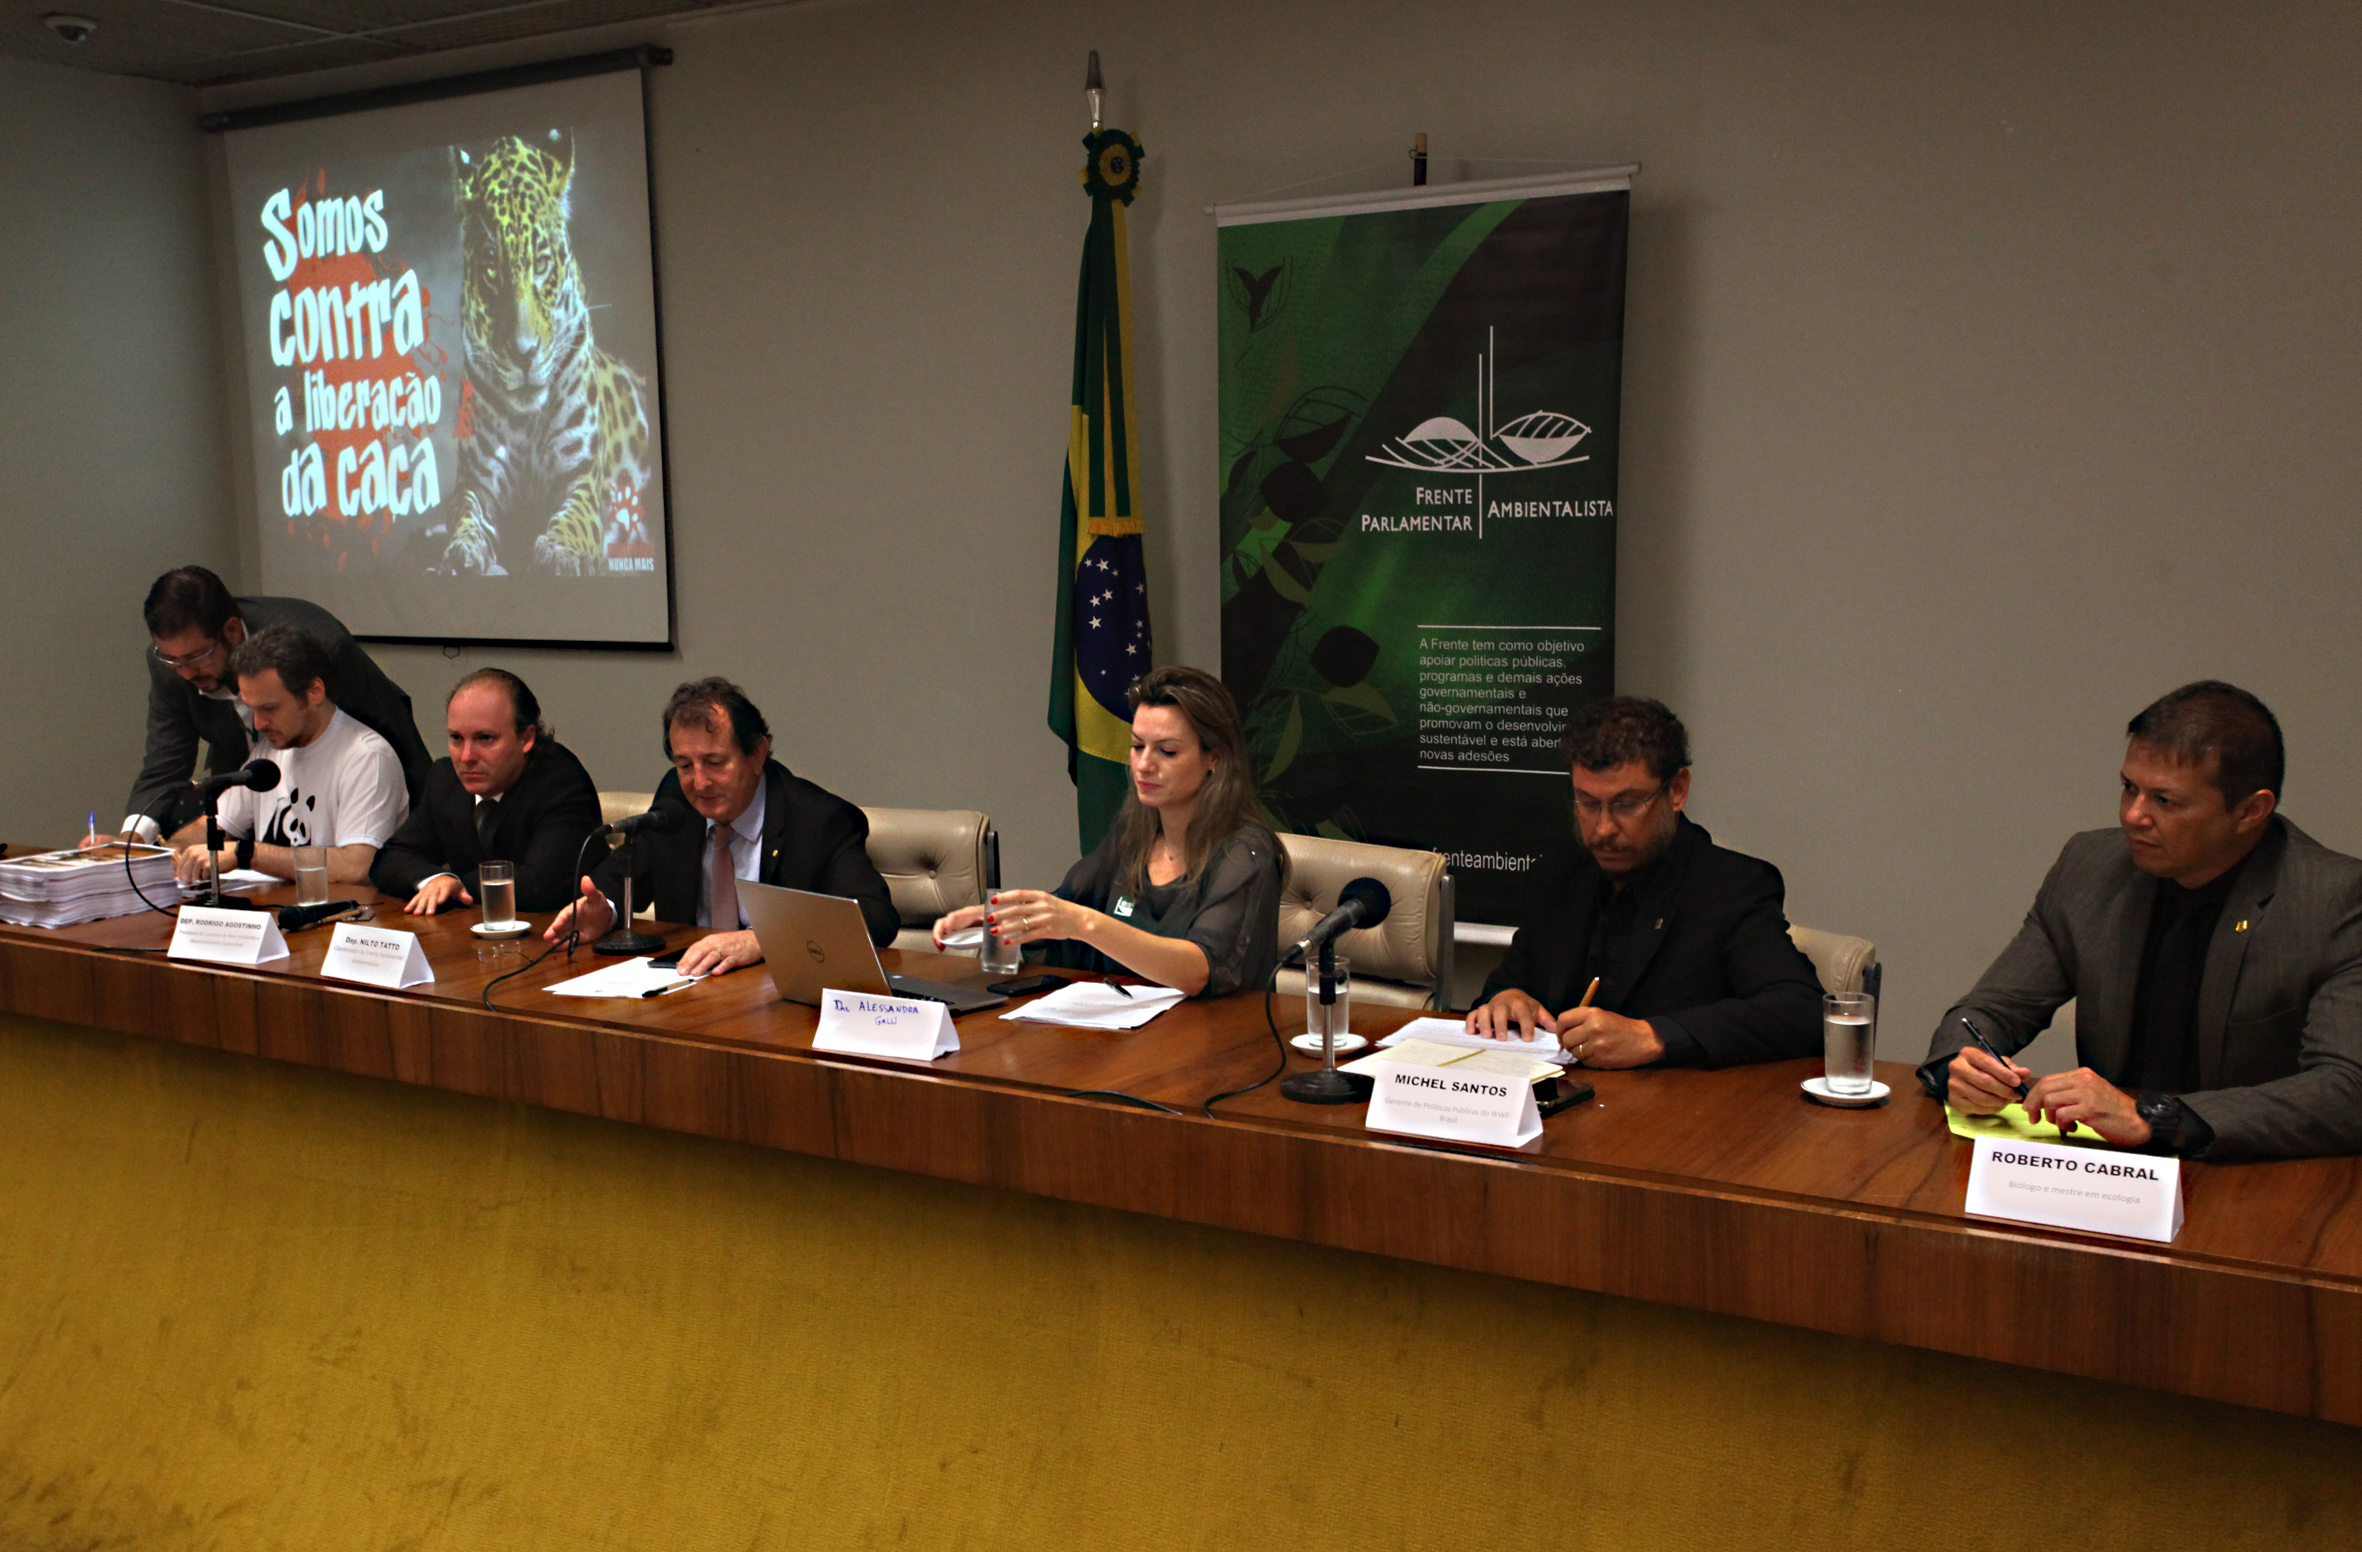 Evento no Auditório Freitas Nobre da Câmara dos Deputados contra os Projetos de Lei para liberação da caça no Brasil. Foto: WWF Brasil.